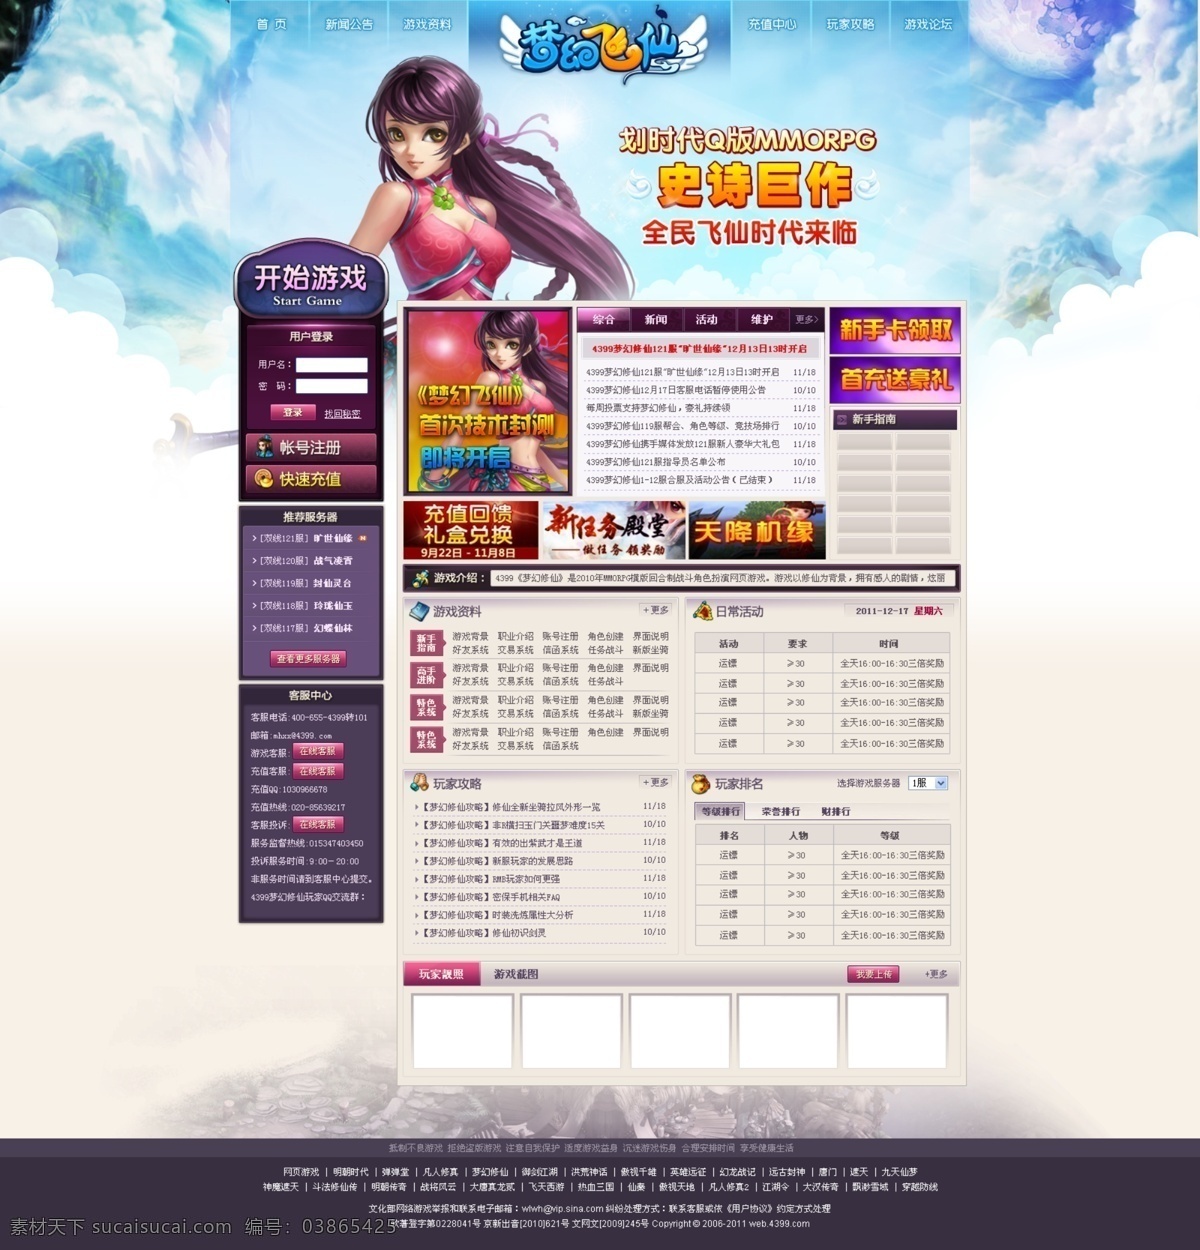 游戏网页 游戏 网站 网页 动漫 手游 web 界面设计 中文模板 白色